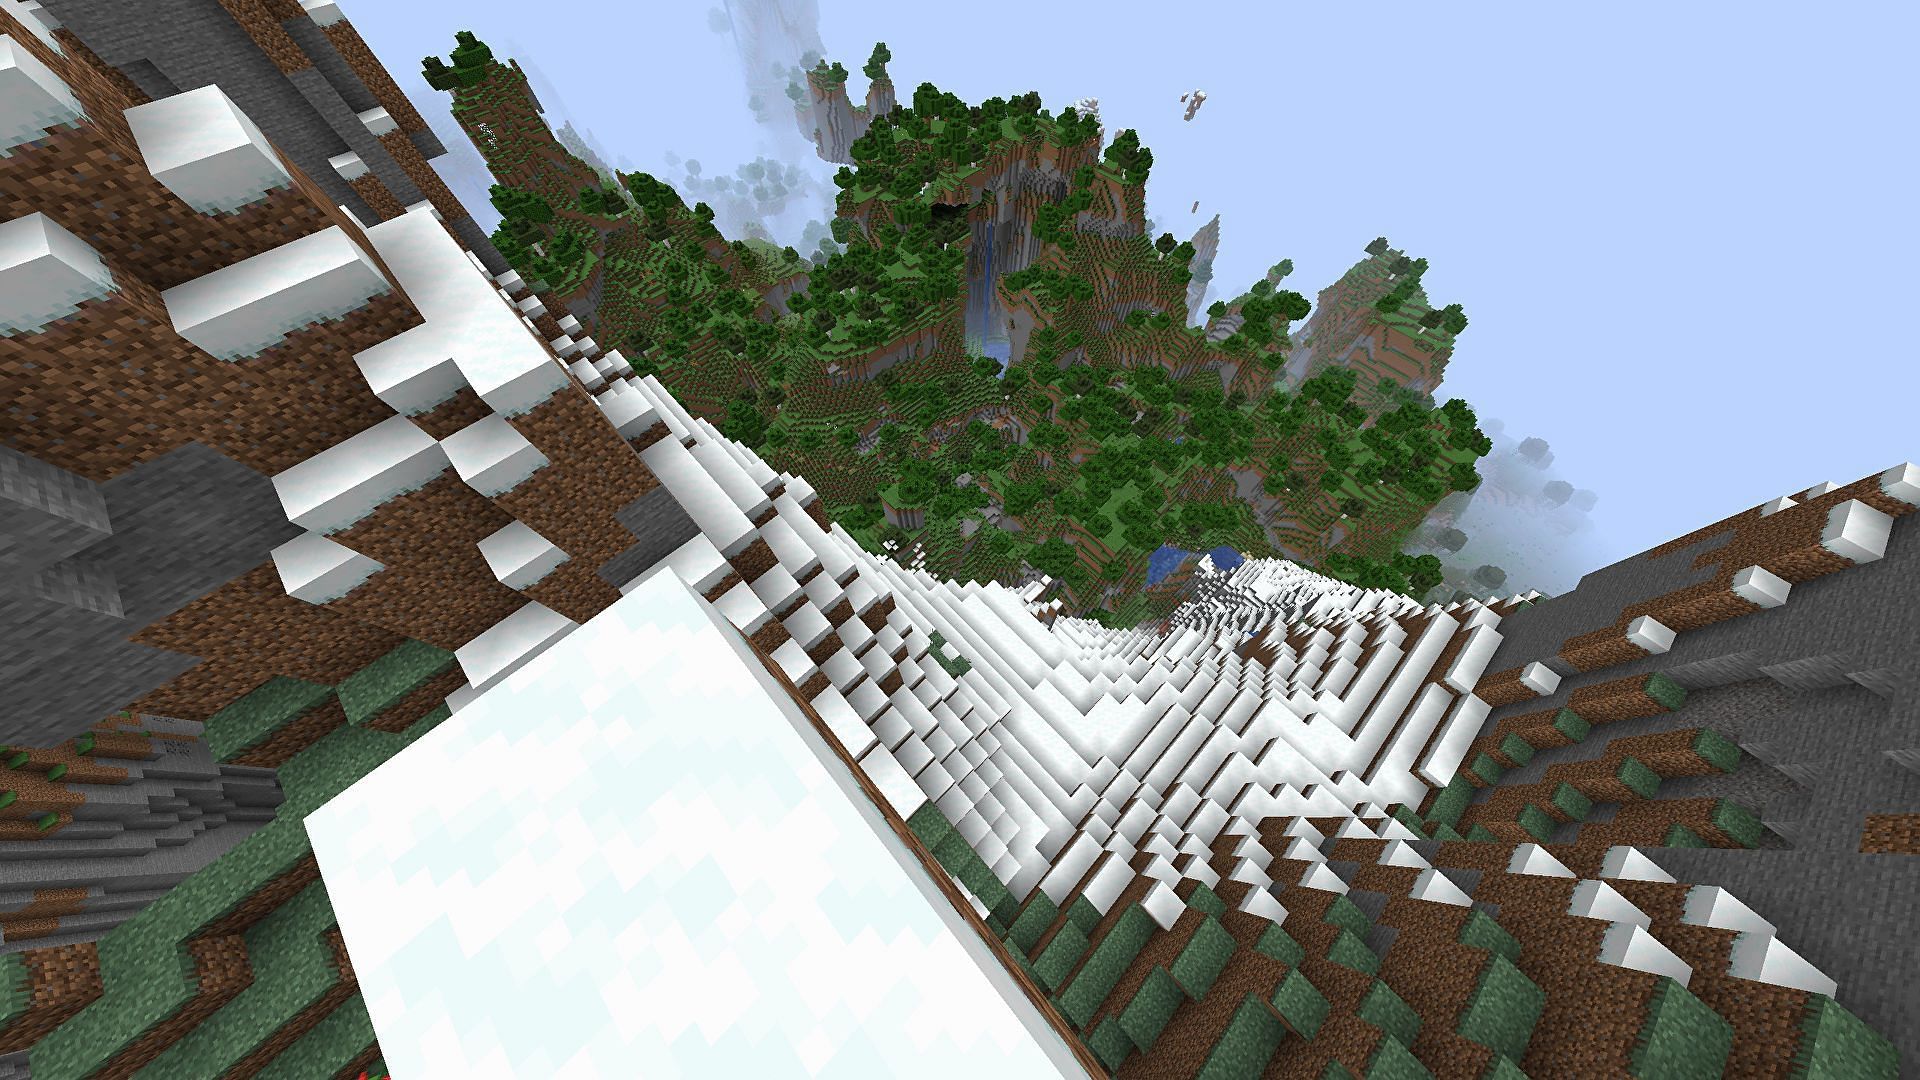 Mountains in Minecraft 1.18 update (Image via Minecraft)